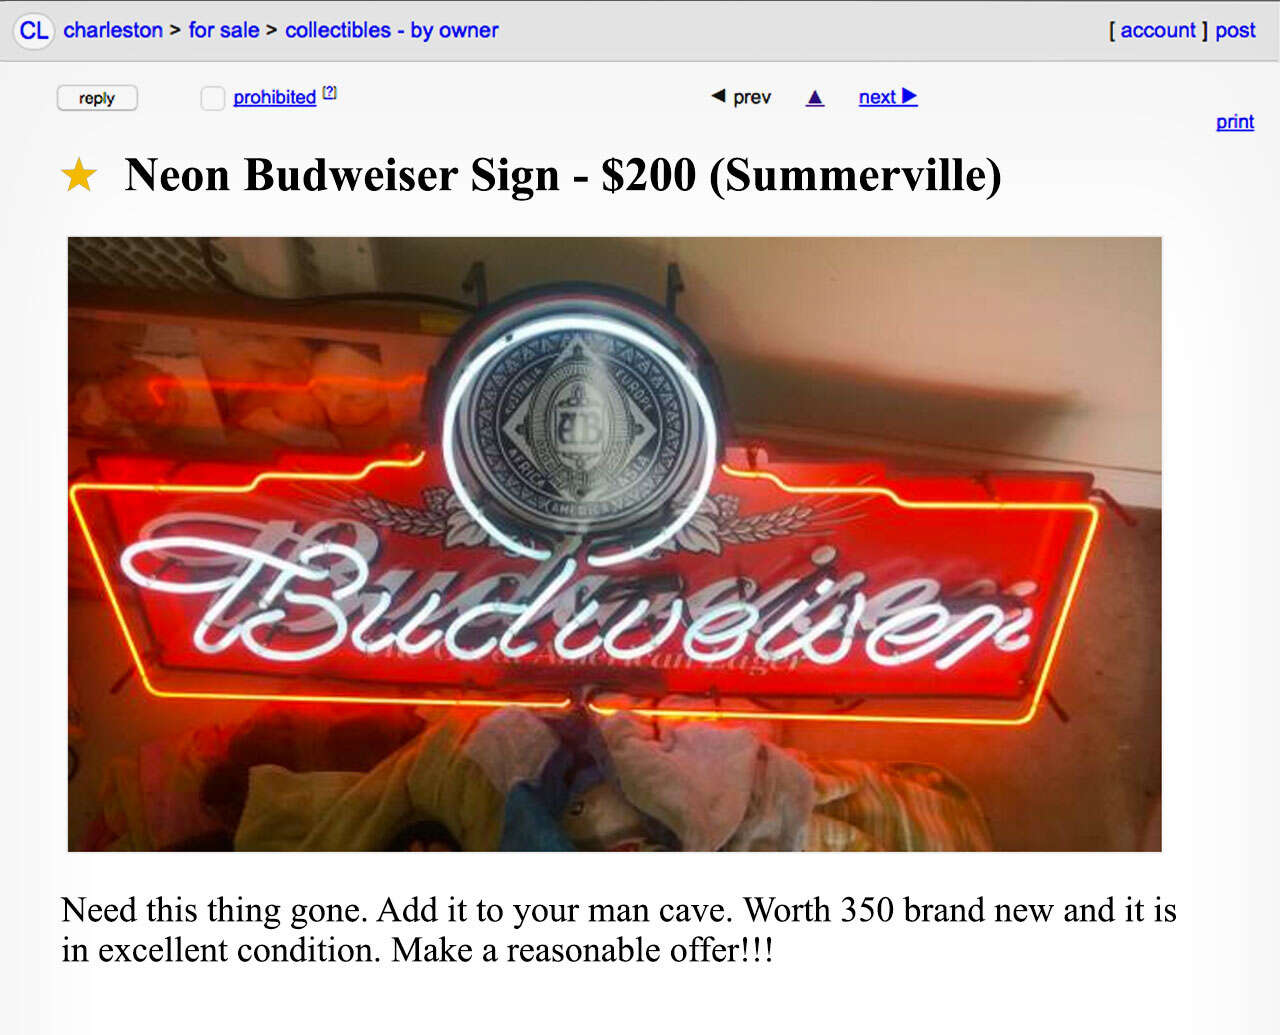 A Craigslist advertisement for a neon Budweiser sign. 